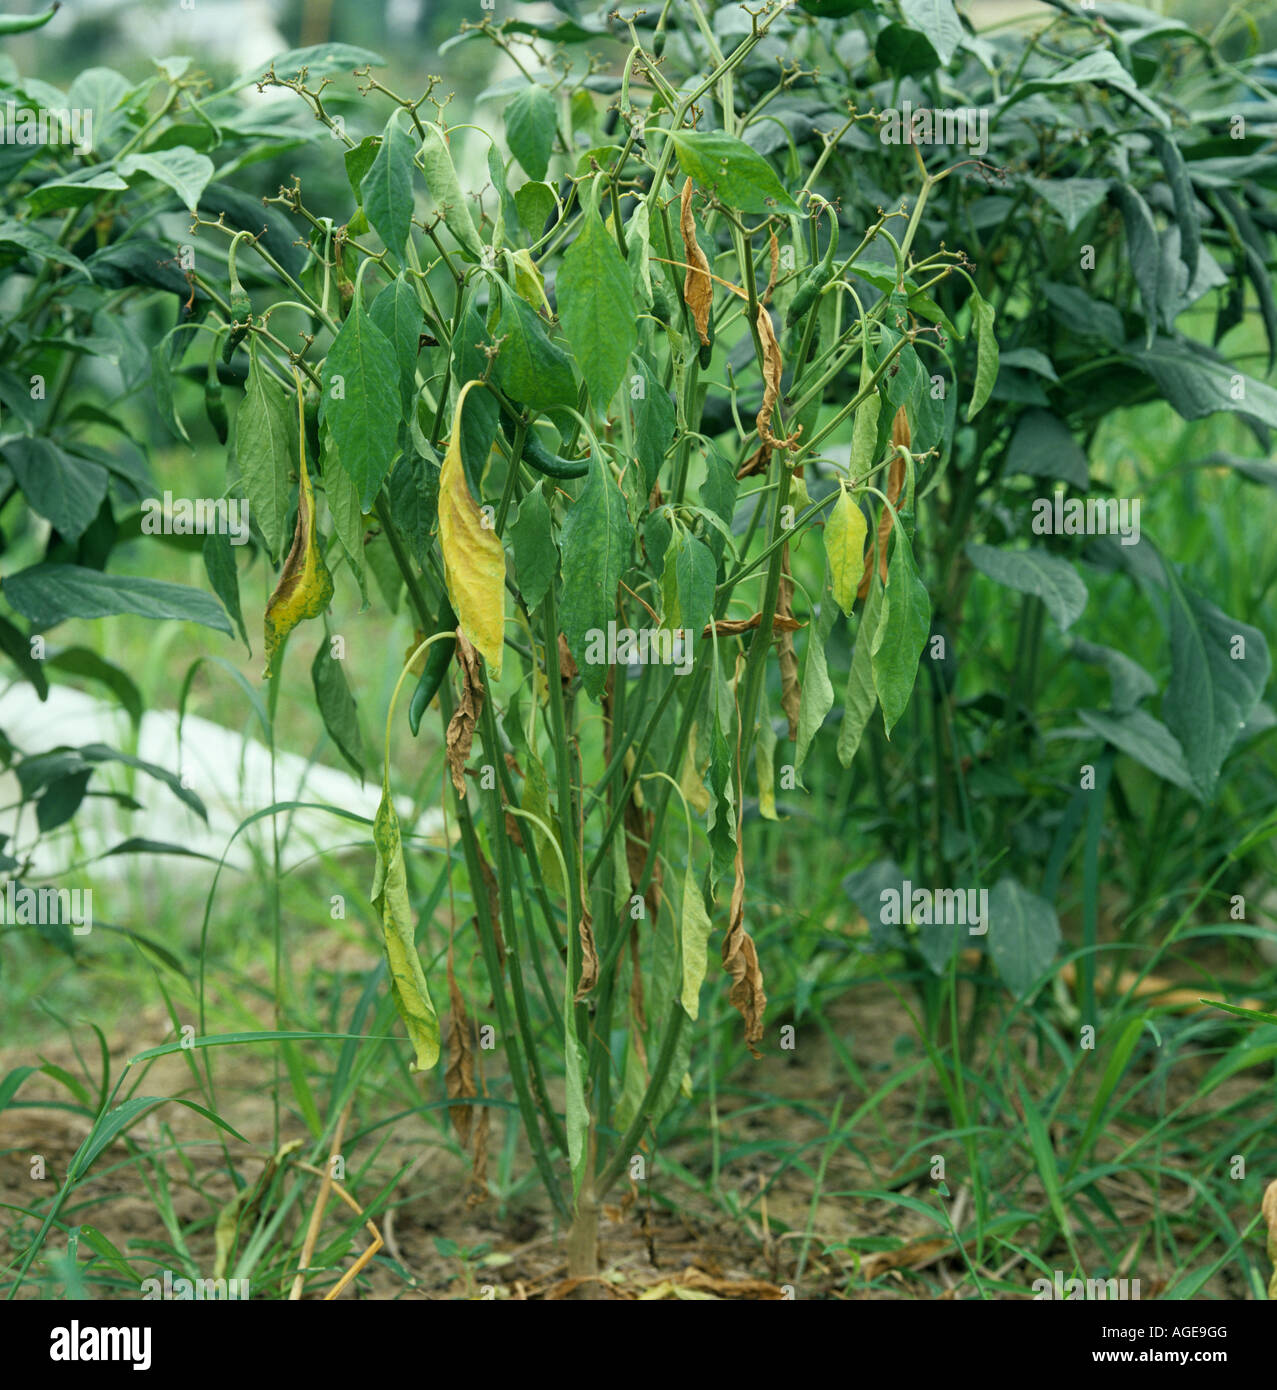 Bacterial wilt Pseudomonas solanacearum on mature capsicum chili pepper plant Thailand Stock Photo